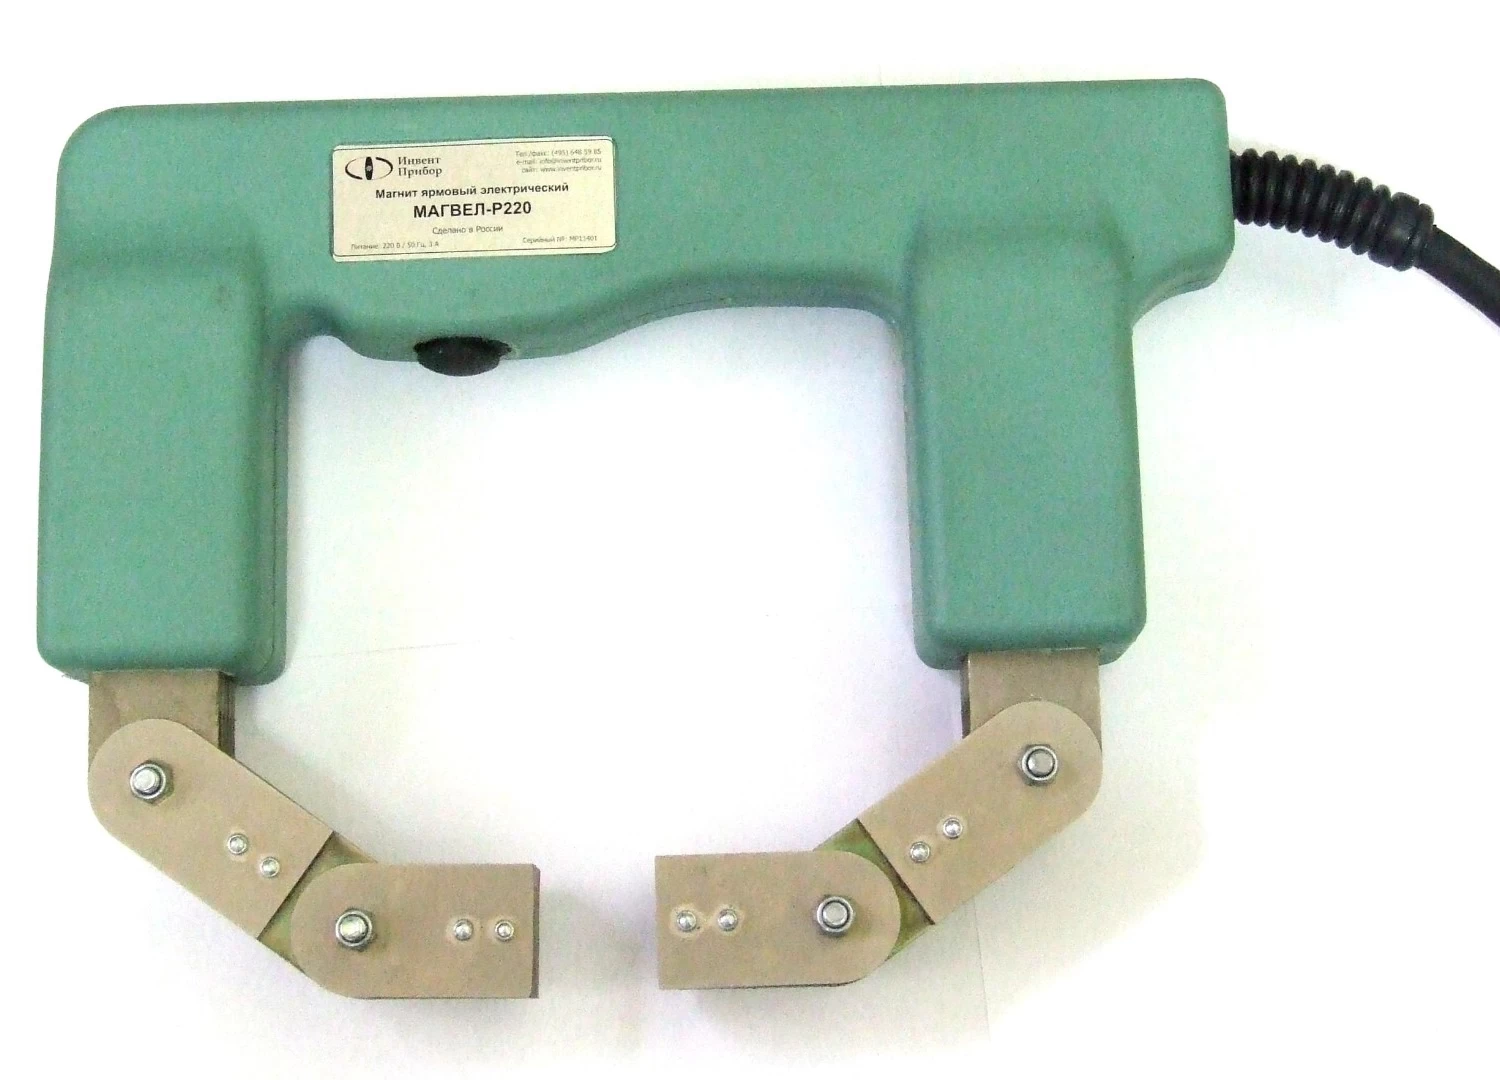 Ярмовый электрический магнитопорошковый дефектоскоп МАГВЕЛ-С220 - 1